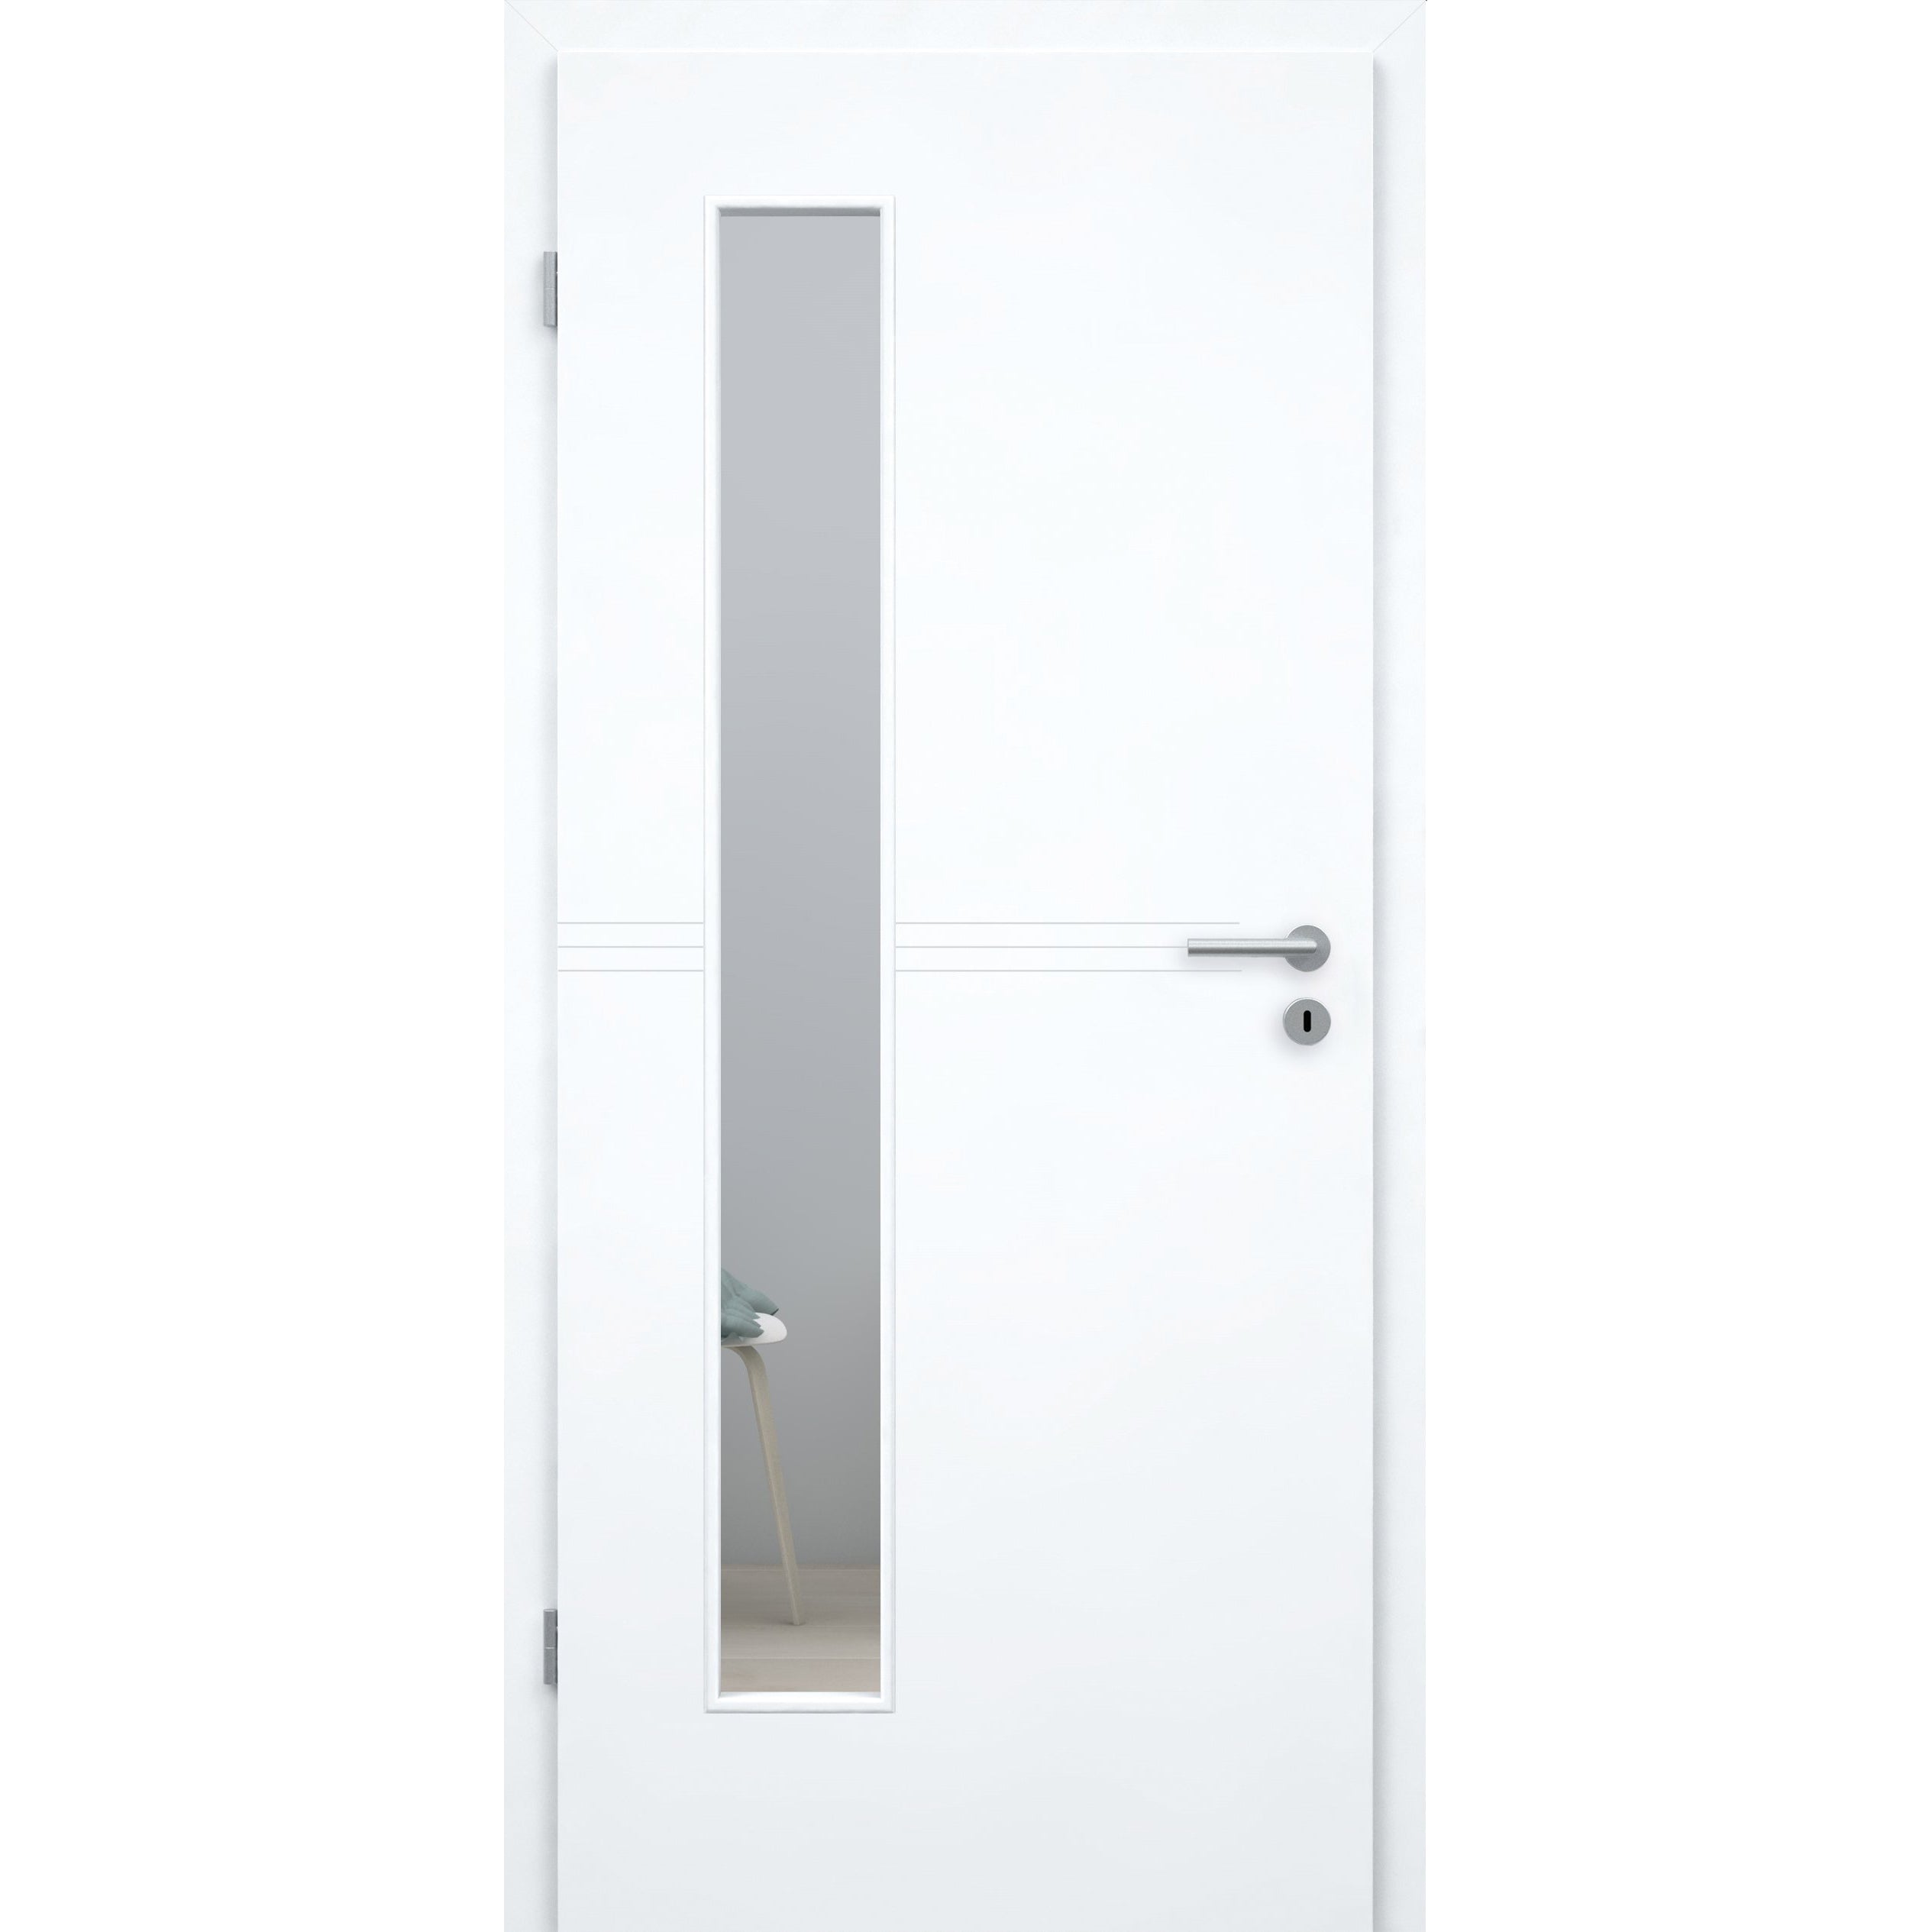 Zimmertür mit Zarge und Lichtausschnitt brillant-weiß 3 Rillen Designkante - Modell Designtür Q33LAB